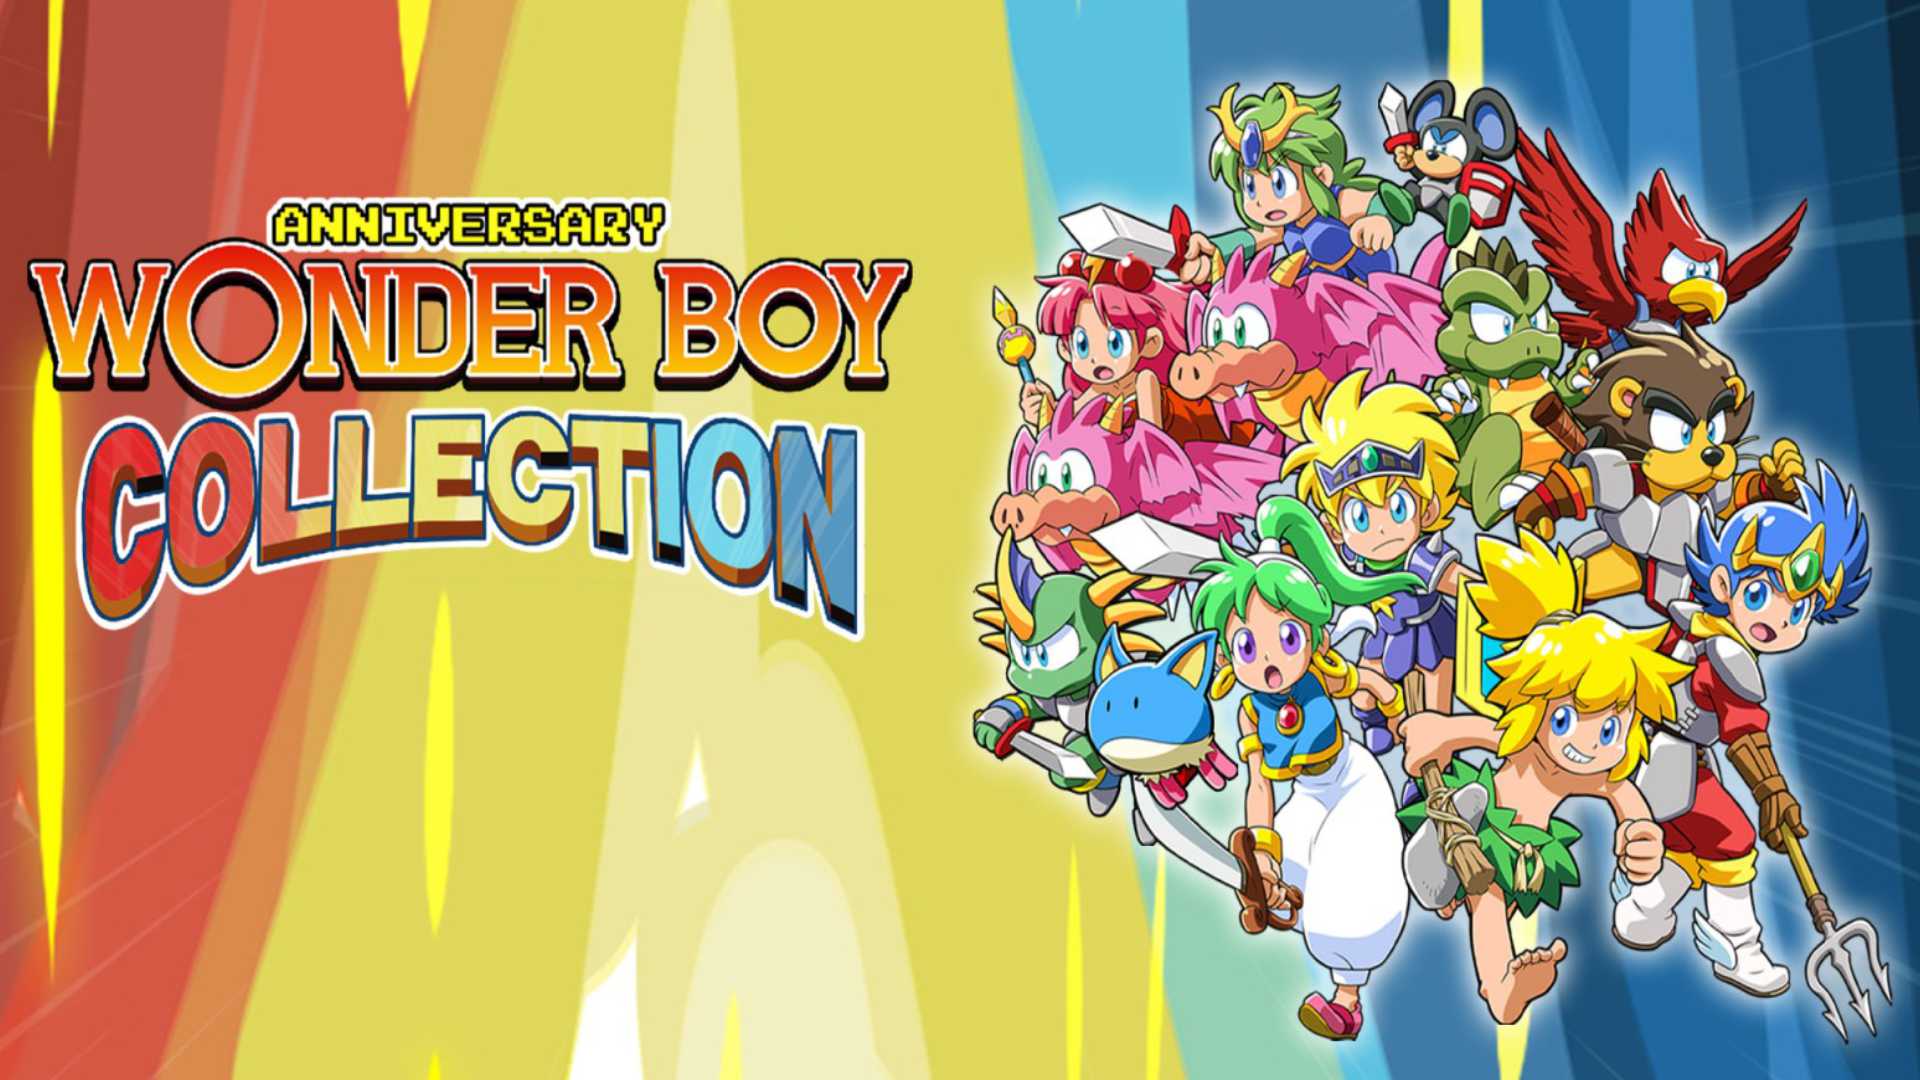 Anniversary Wonder Boy Collection: Sechs klassische Spiele in 21 Versionen